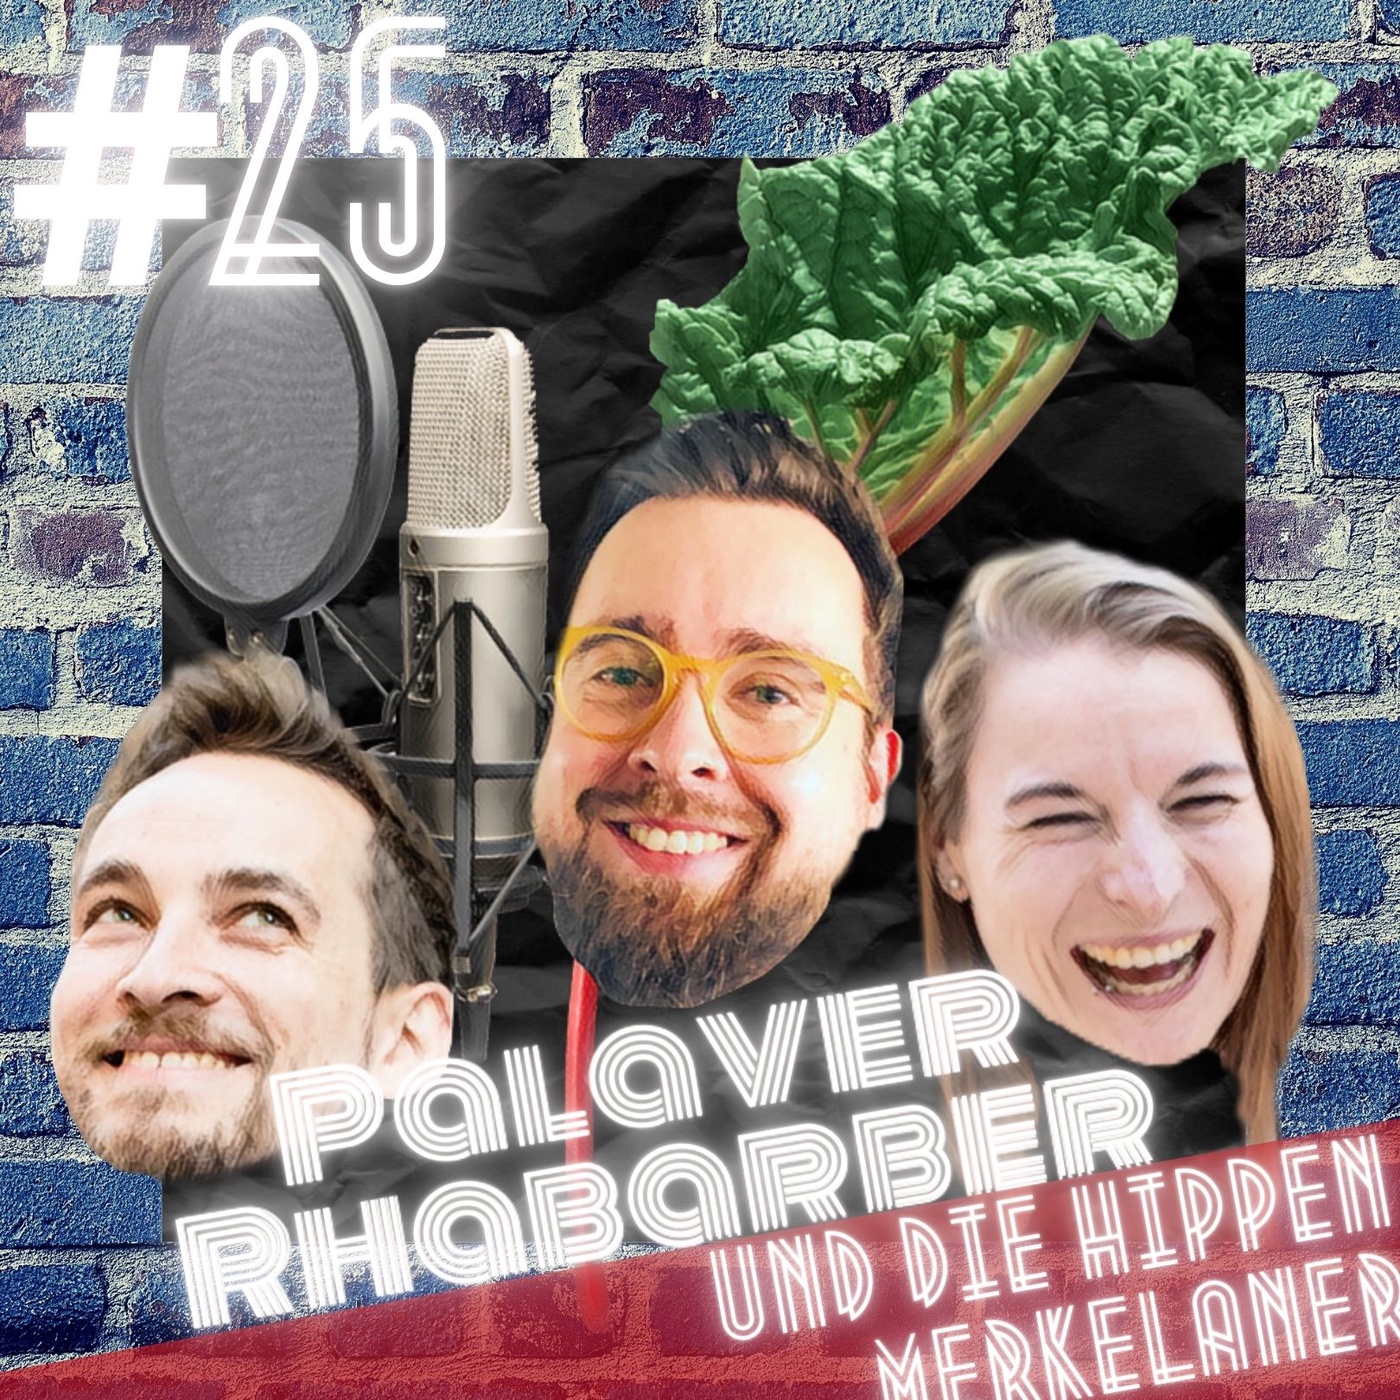 #25 Palaver Rhabarber und die hippen Merkelaner